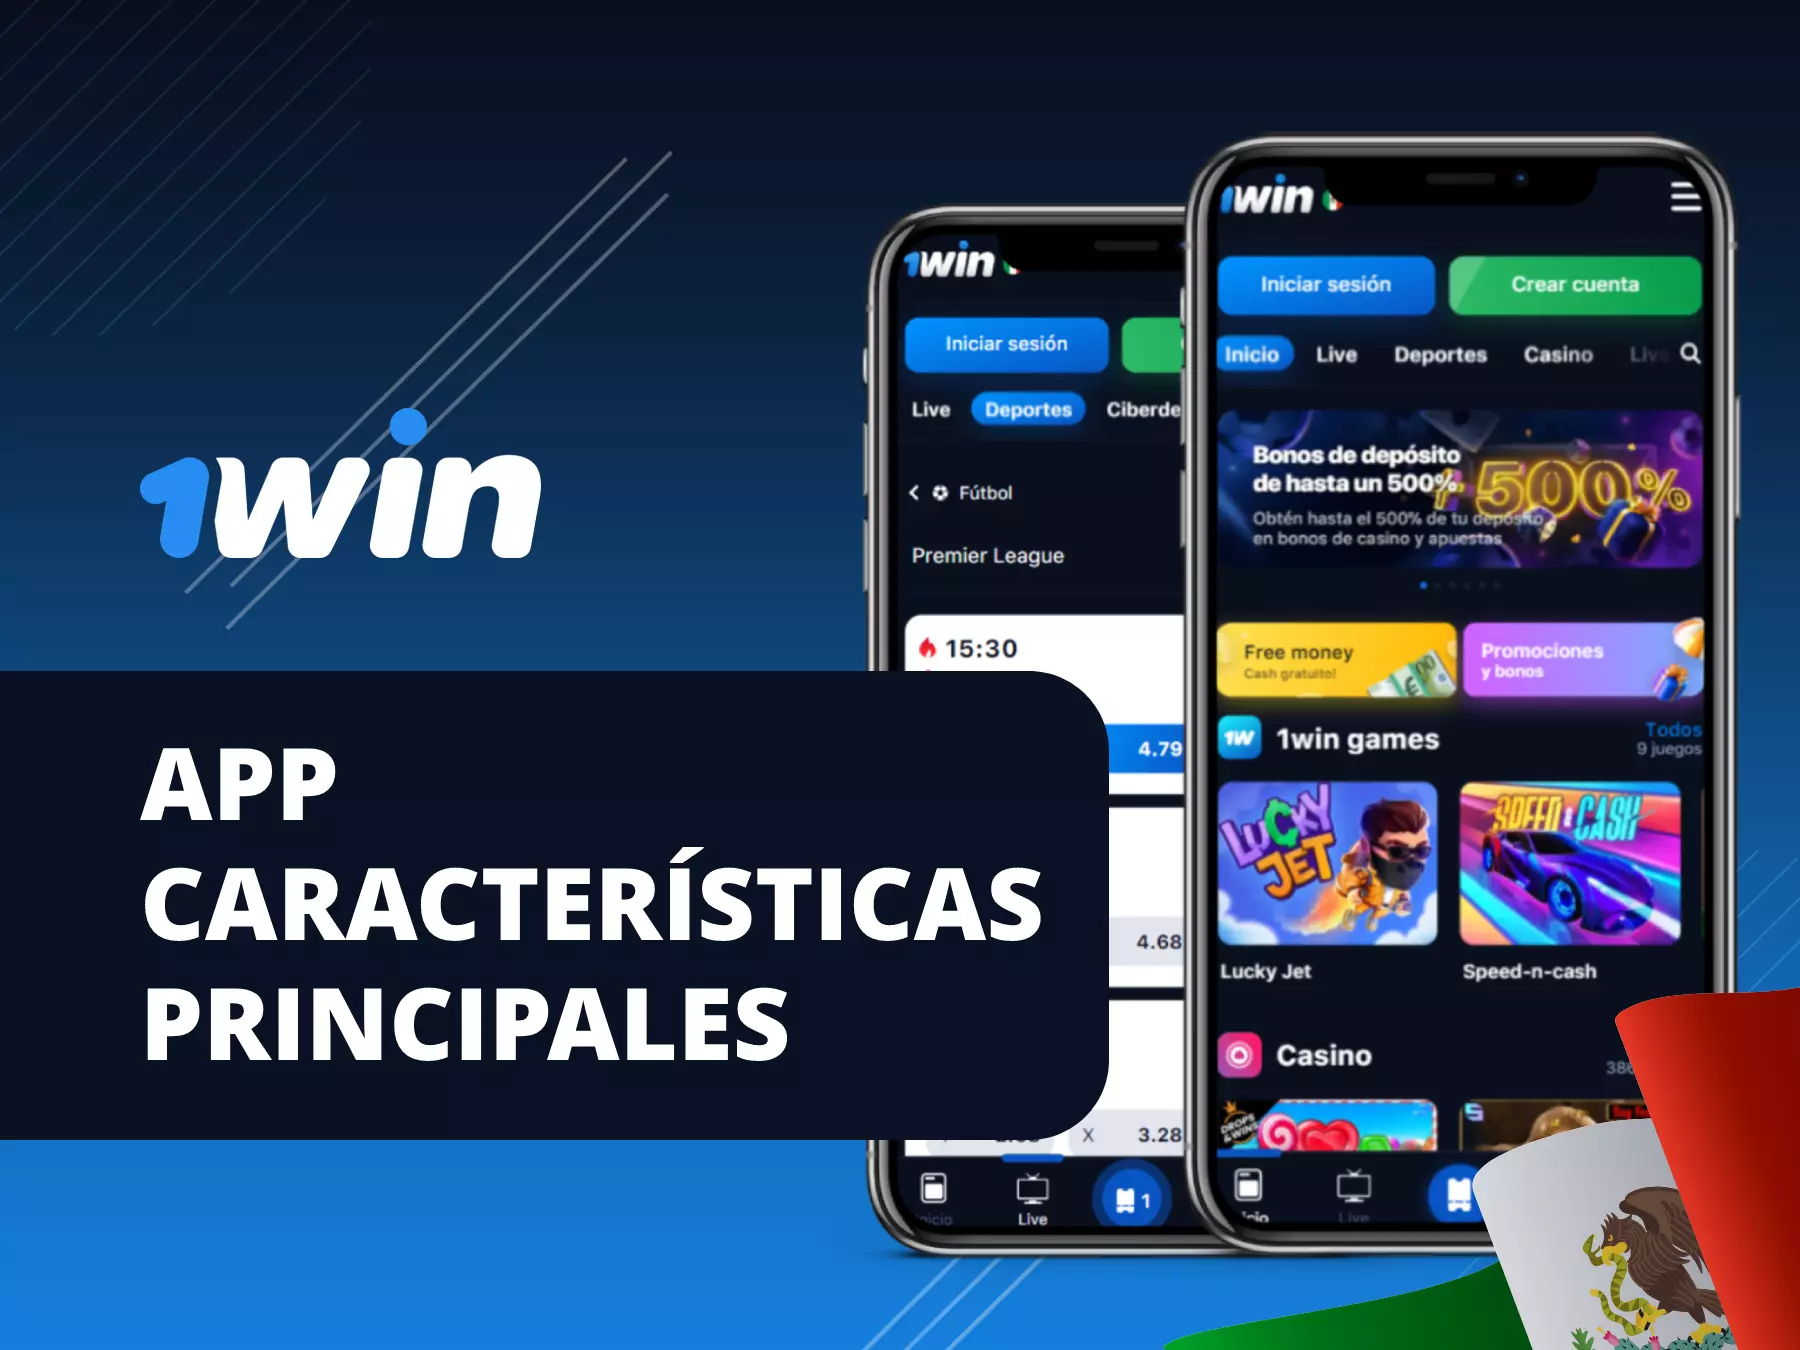 1win app características principales